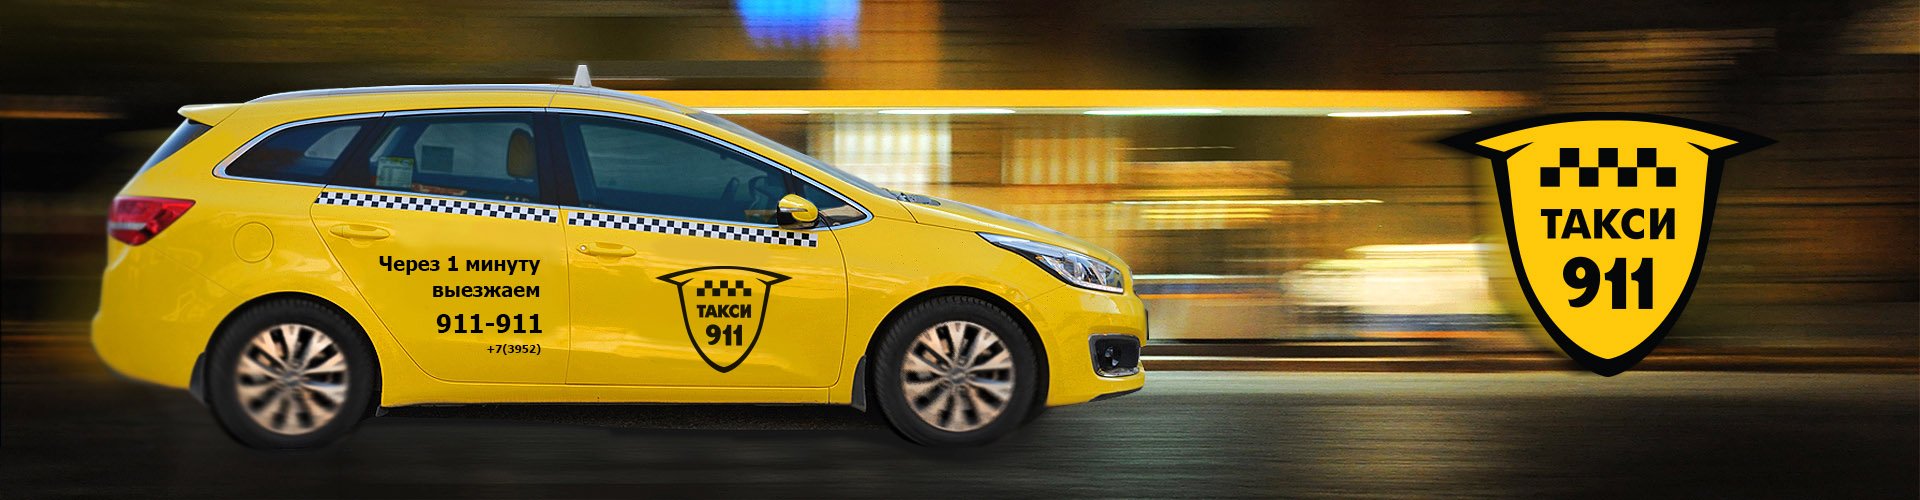 логотип такси